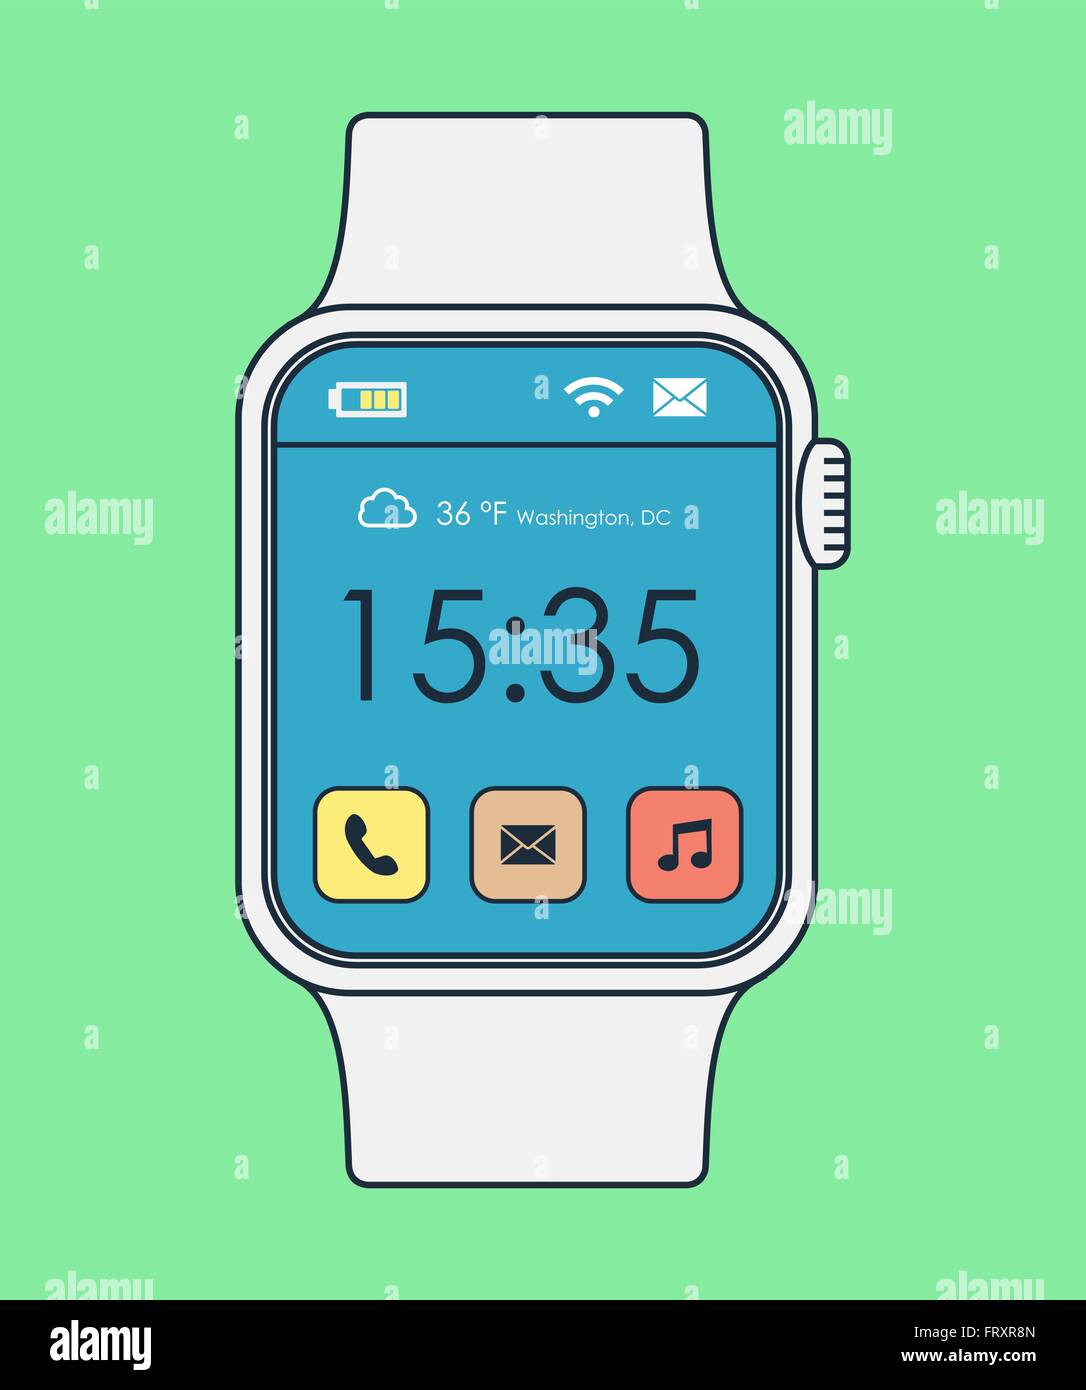 Smart Uhr Abbildung im modernen Linie Kunststil mit bunten app-Icons und Zeitanzeige. EPS10 Vektor. Stock Vektor